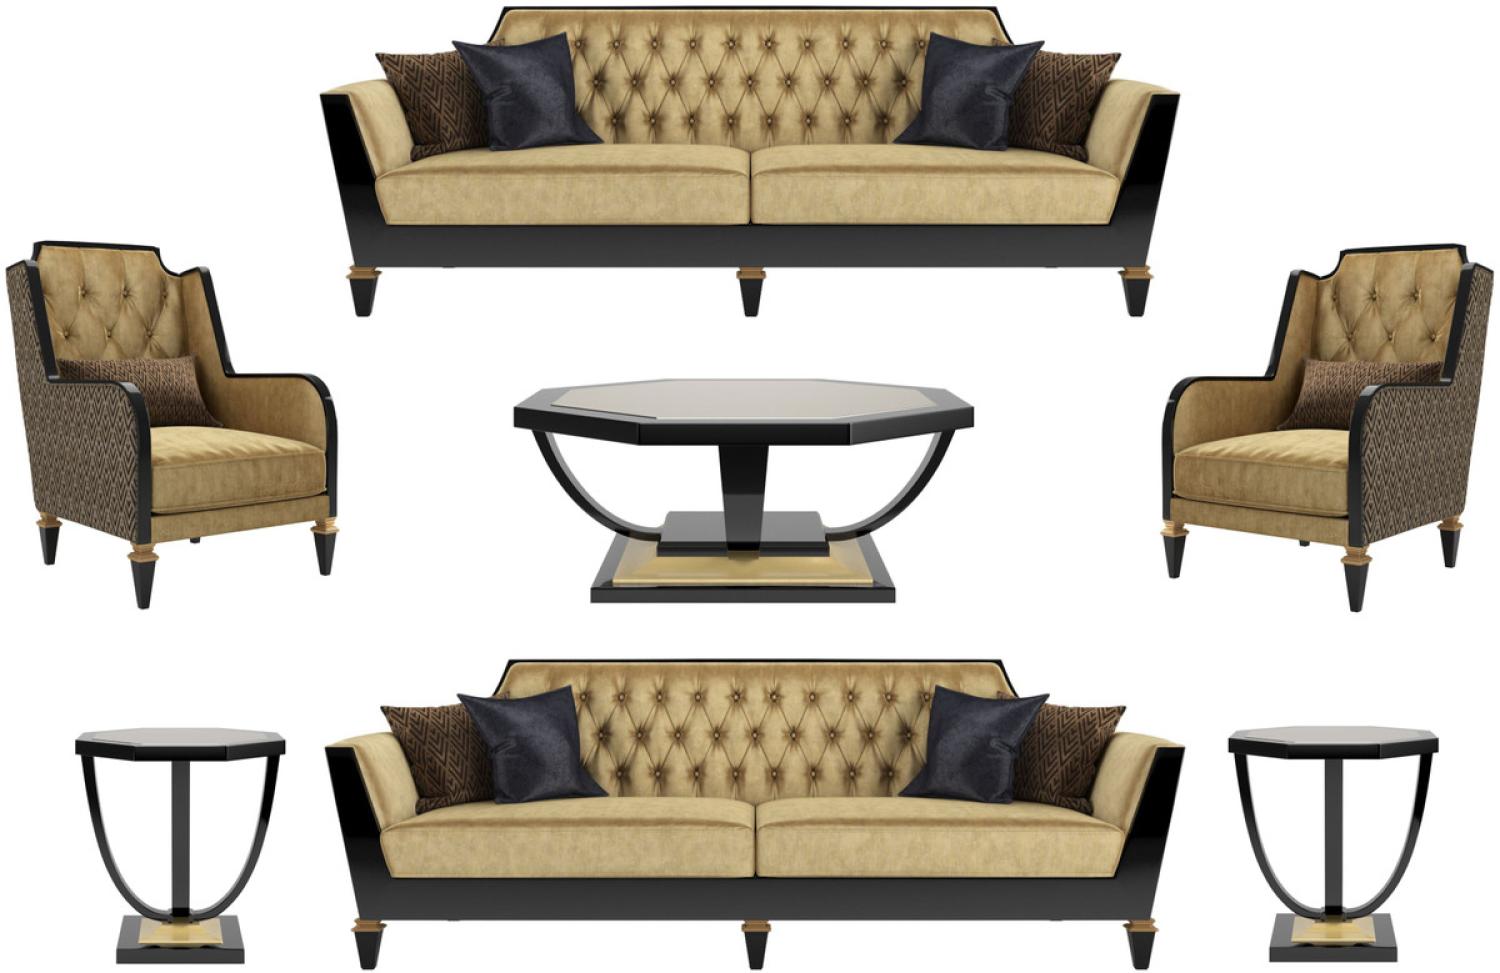 Casa Padrino Luxus Barock Wohnzimmer Set Gold / Schwarz - 2 Sofas & 2 Sessel & 1 Couchtisch & 2 Beistelltische - Wohnzimmermöbel im Barockstil - Edle Barock Möbel Bild 1